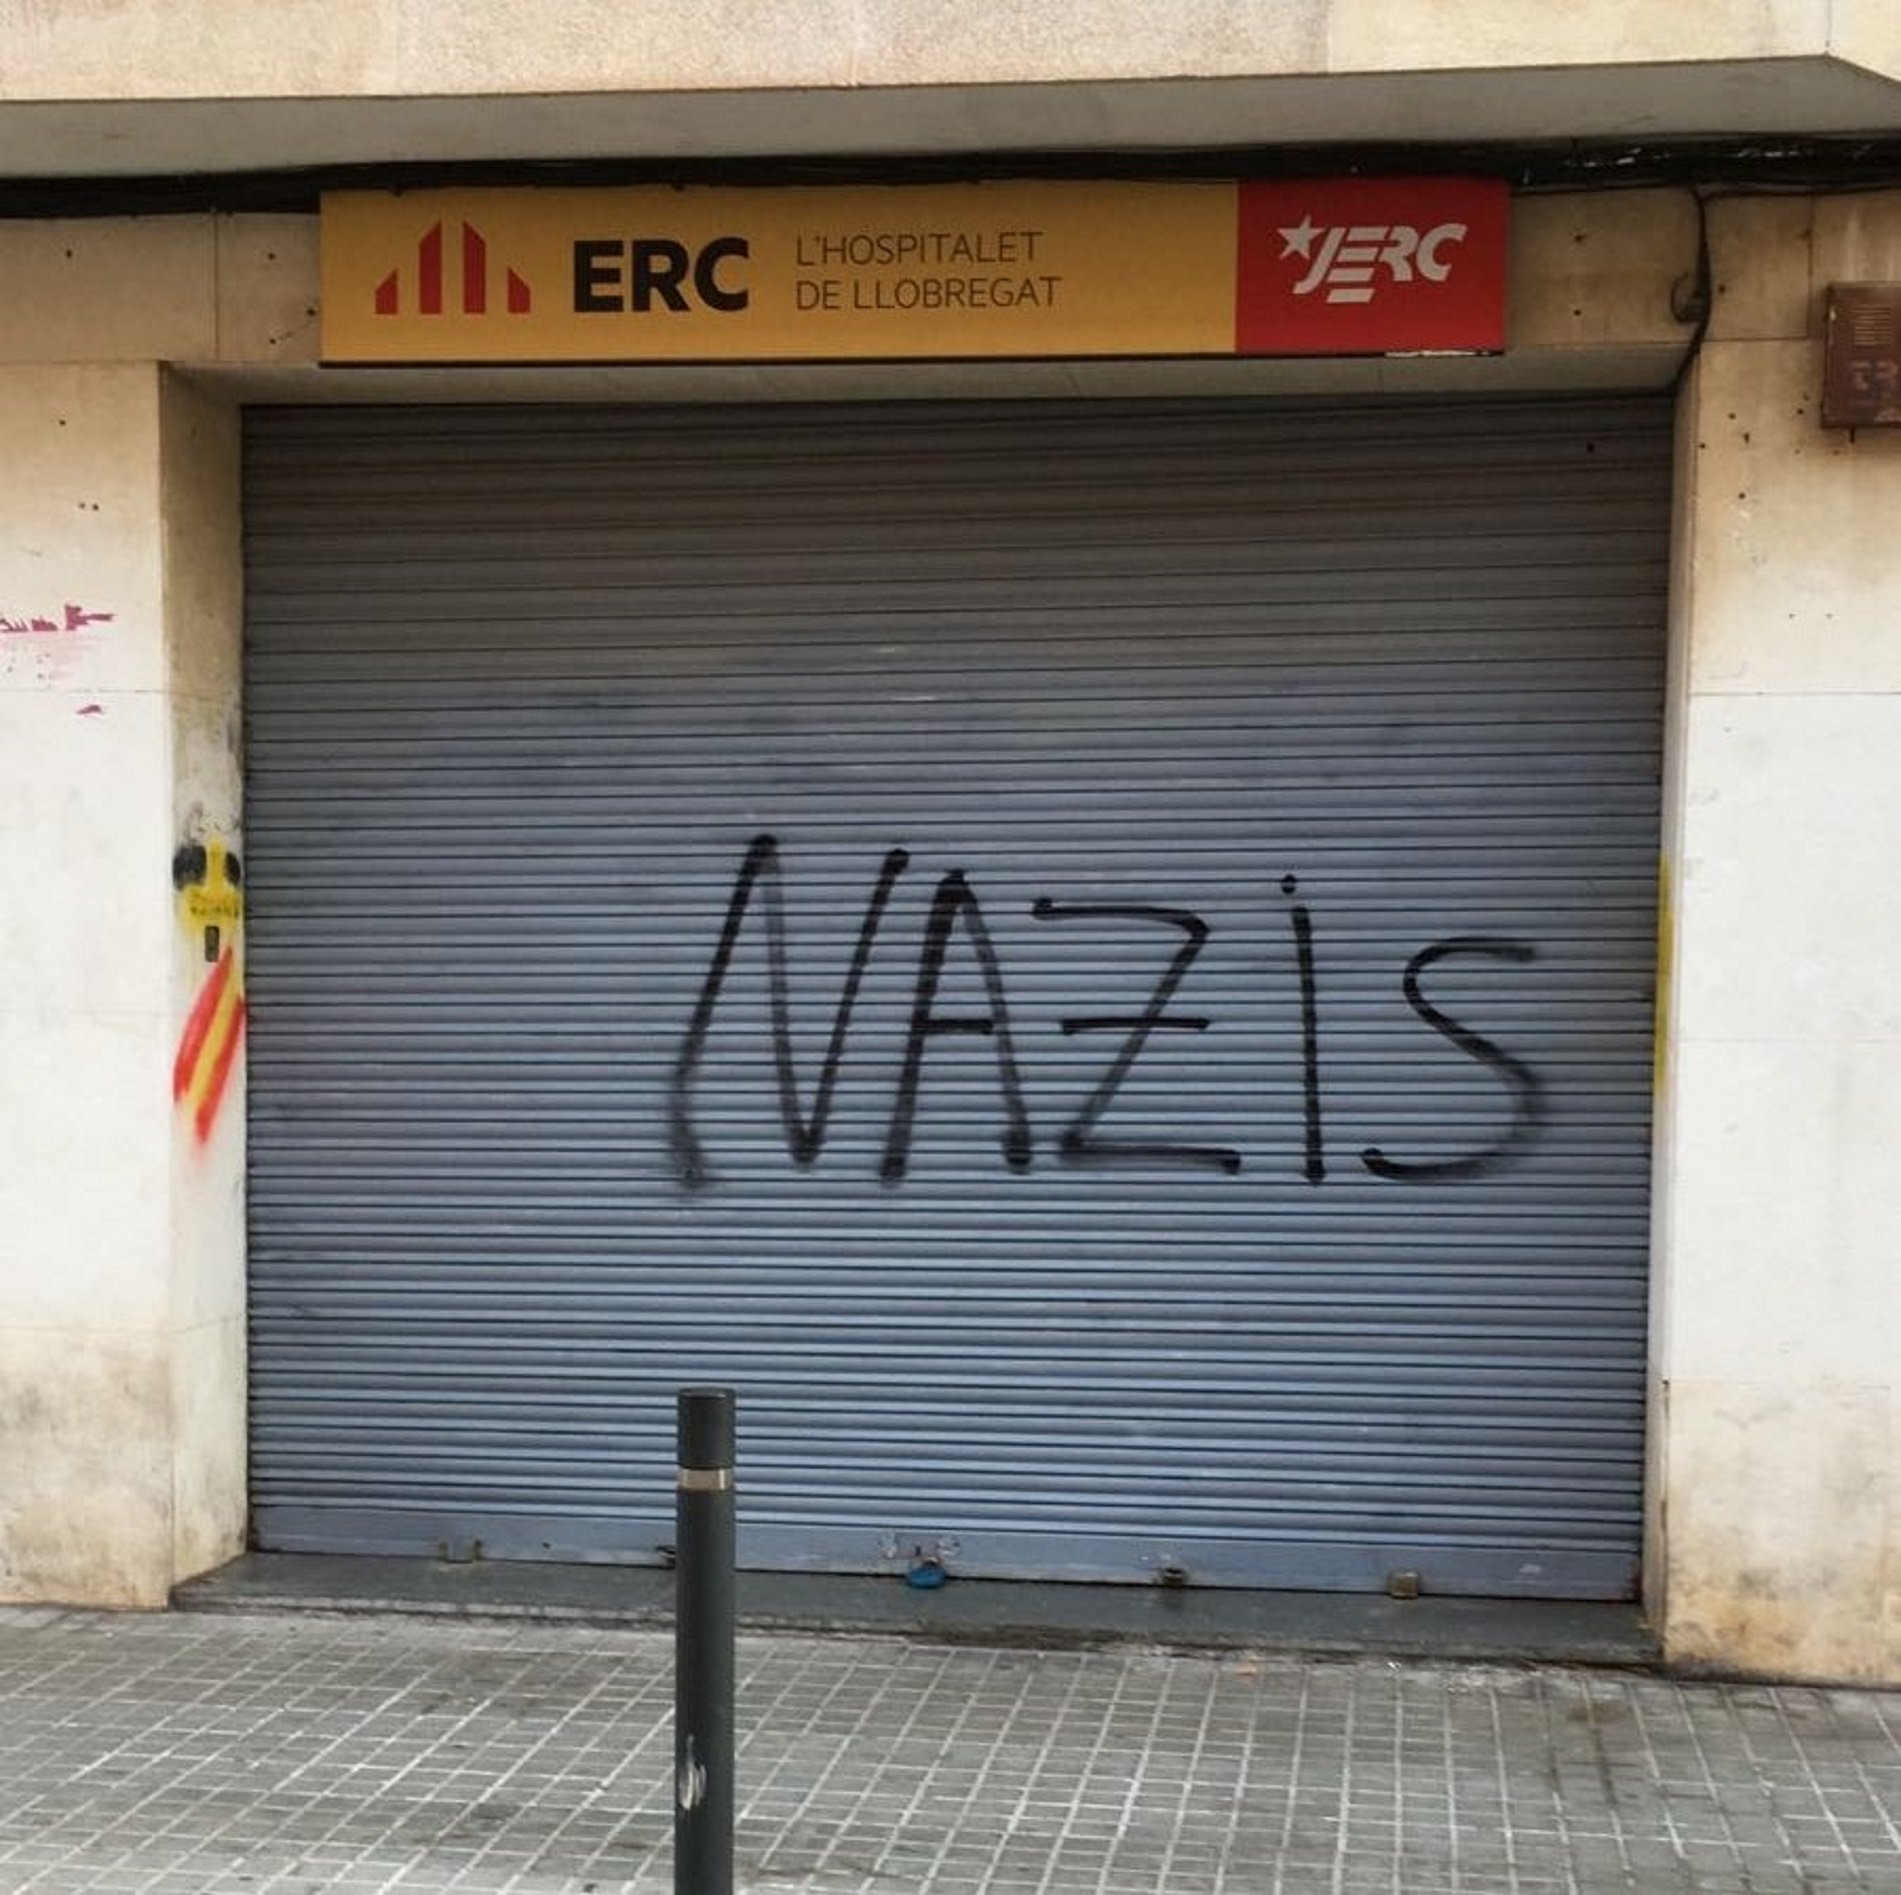 Atac espanyolista a una seu d'ERC a l'Hospitalet